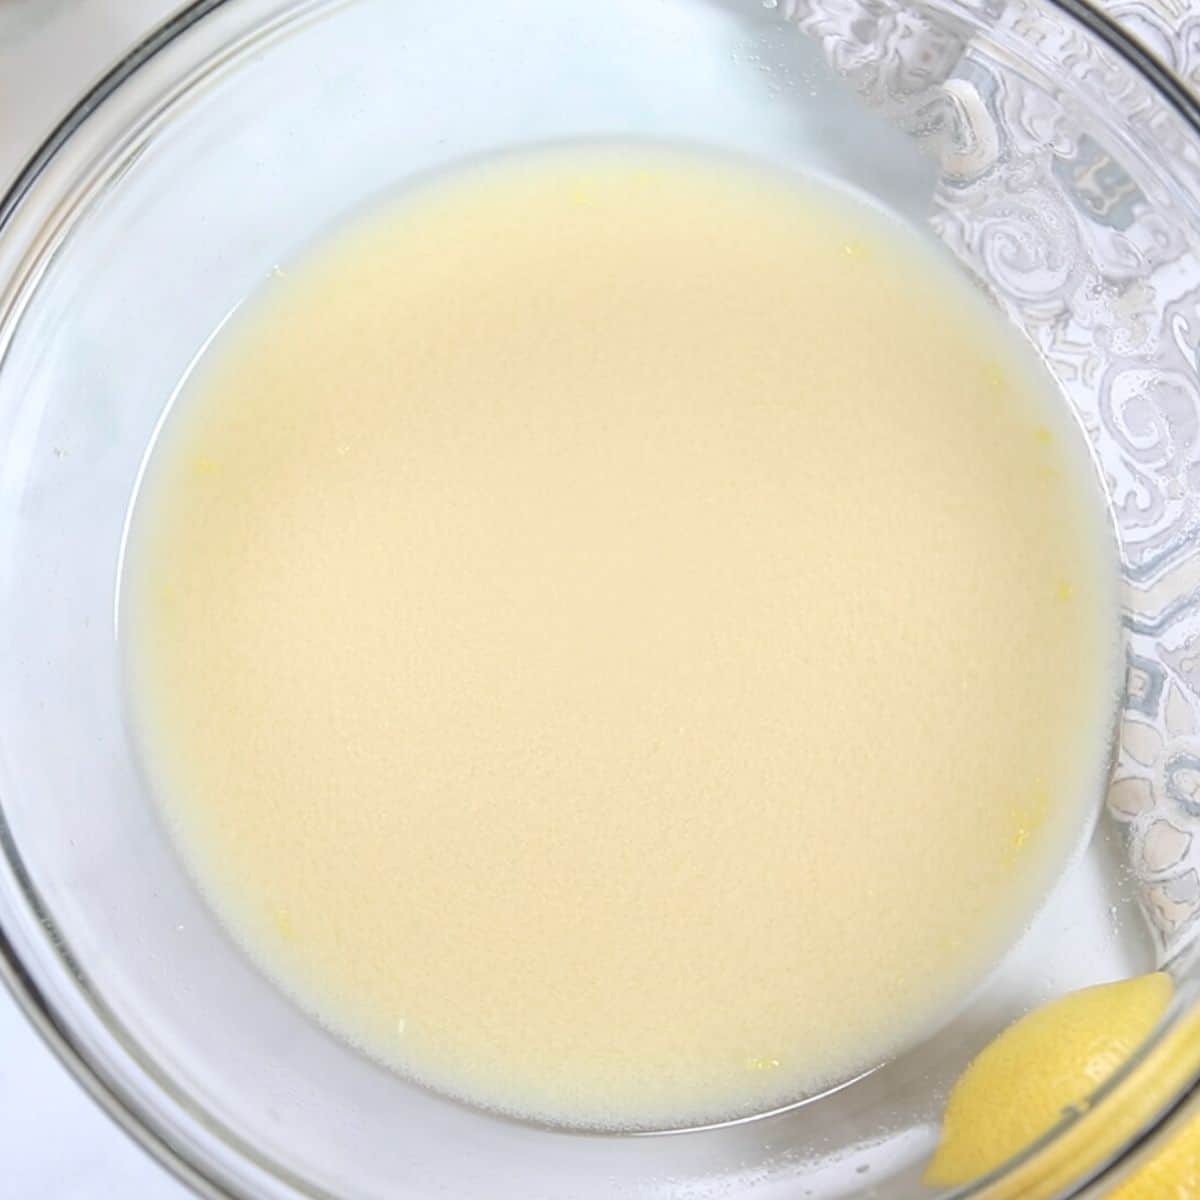 Lemon Sauce in glass bowl.